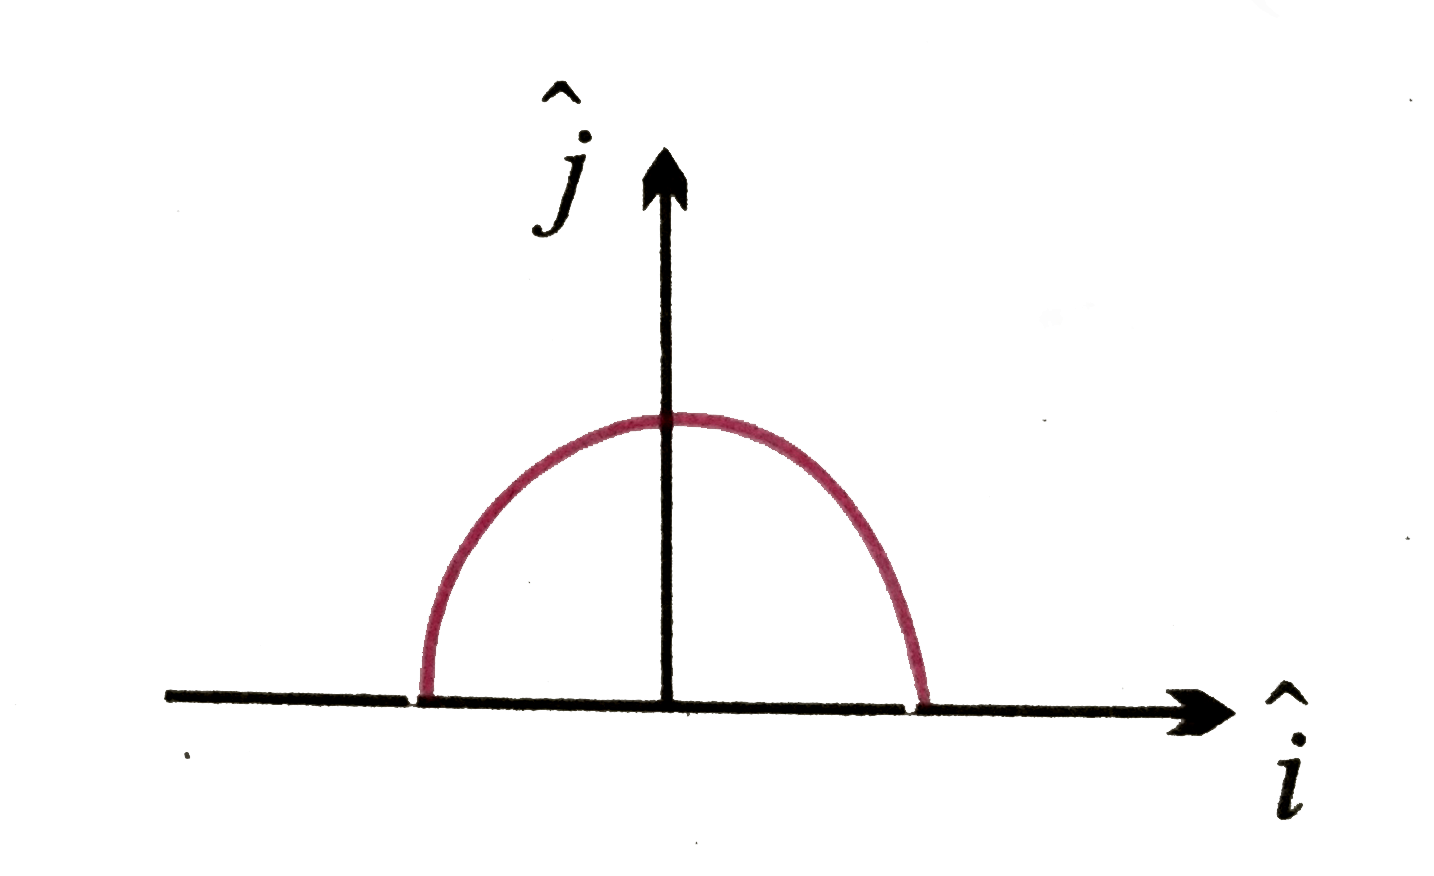 त्रिज्या r की एक अर्धवृत्तीय वलय पर धनात्मक आवेश q समान रूप से वितरित है। केंद्र O पर परिणामी क्षेत्र vecE है -